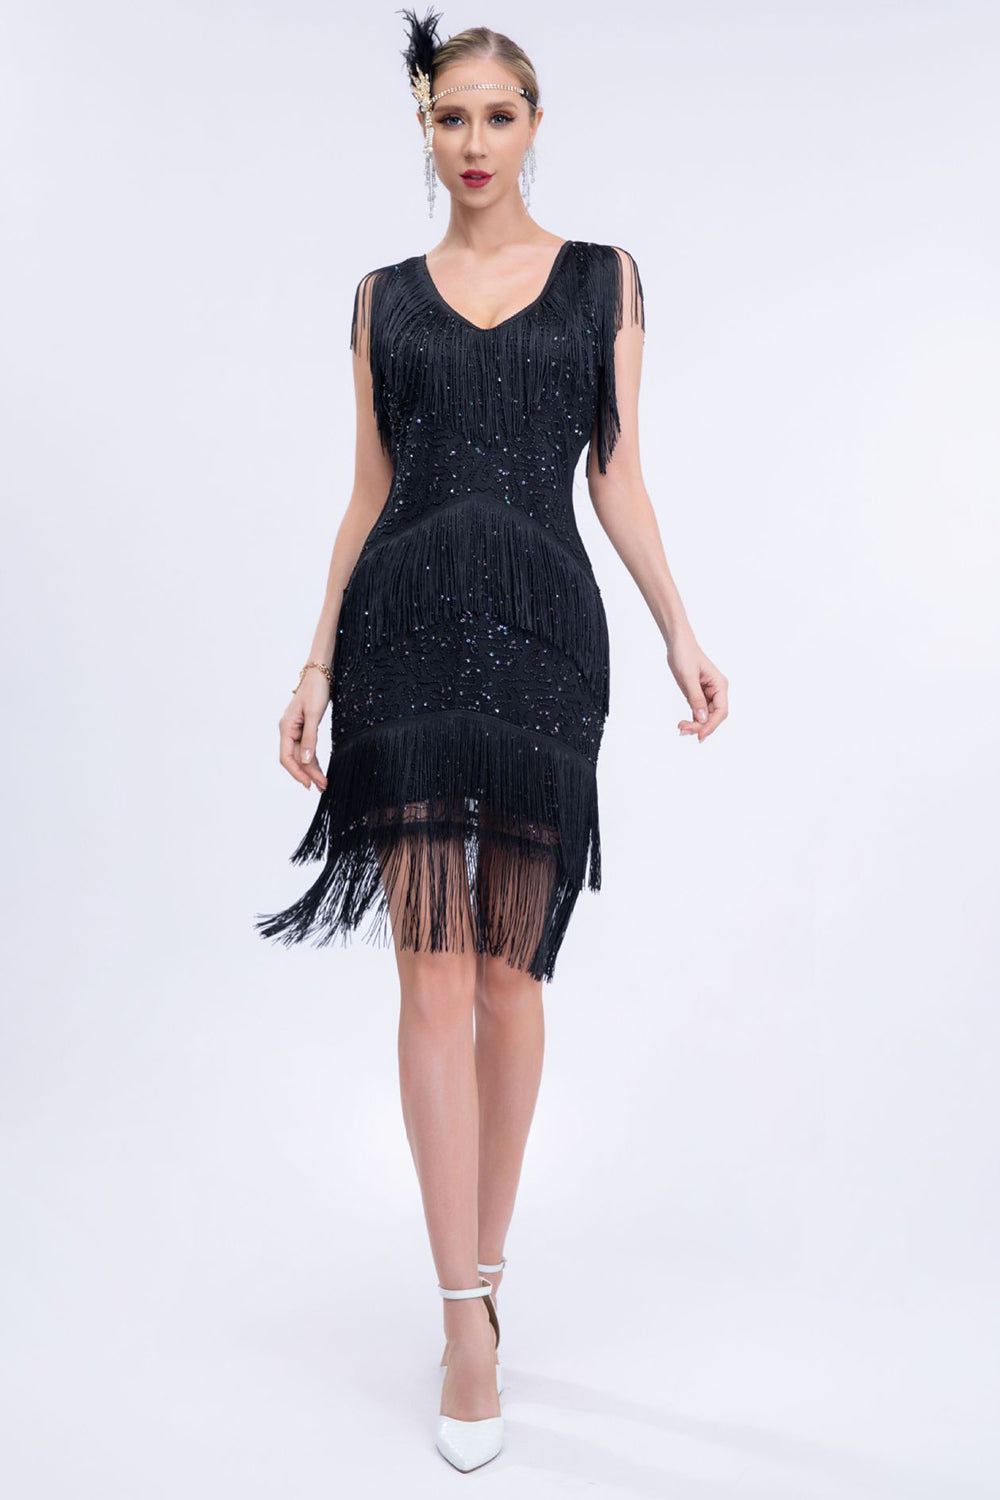 Black Fringes 1920s Dress with Sleeveless